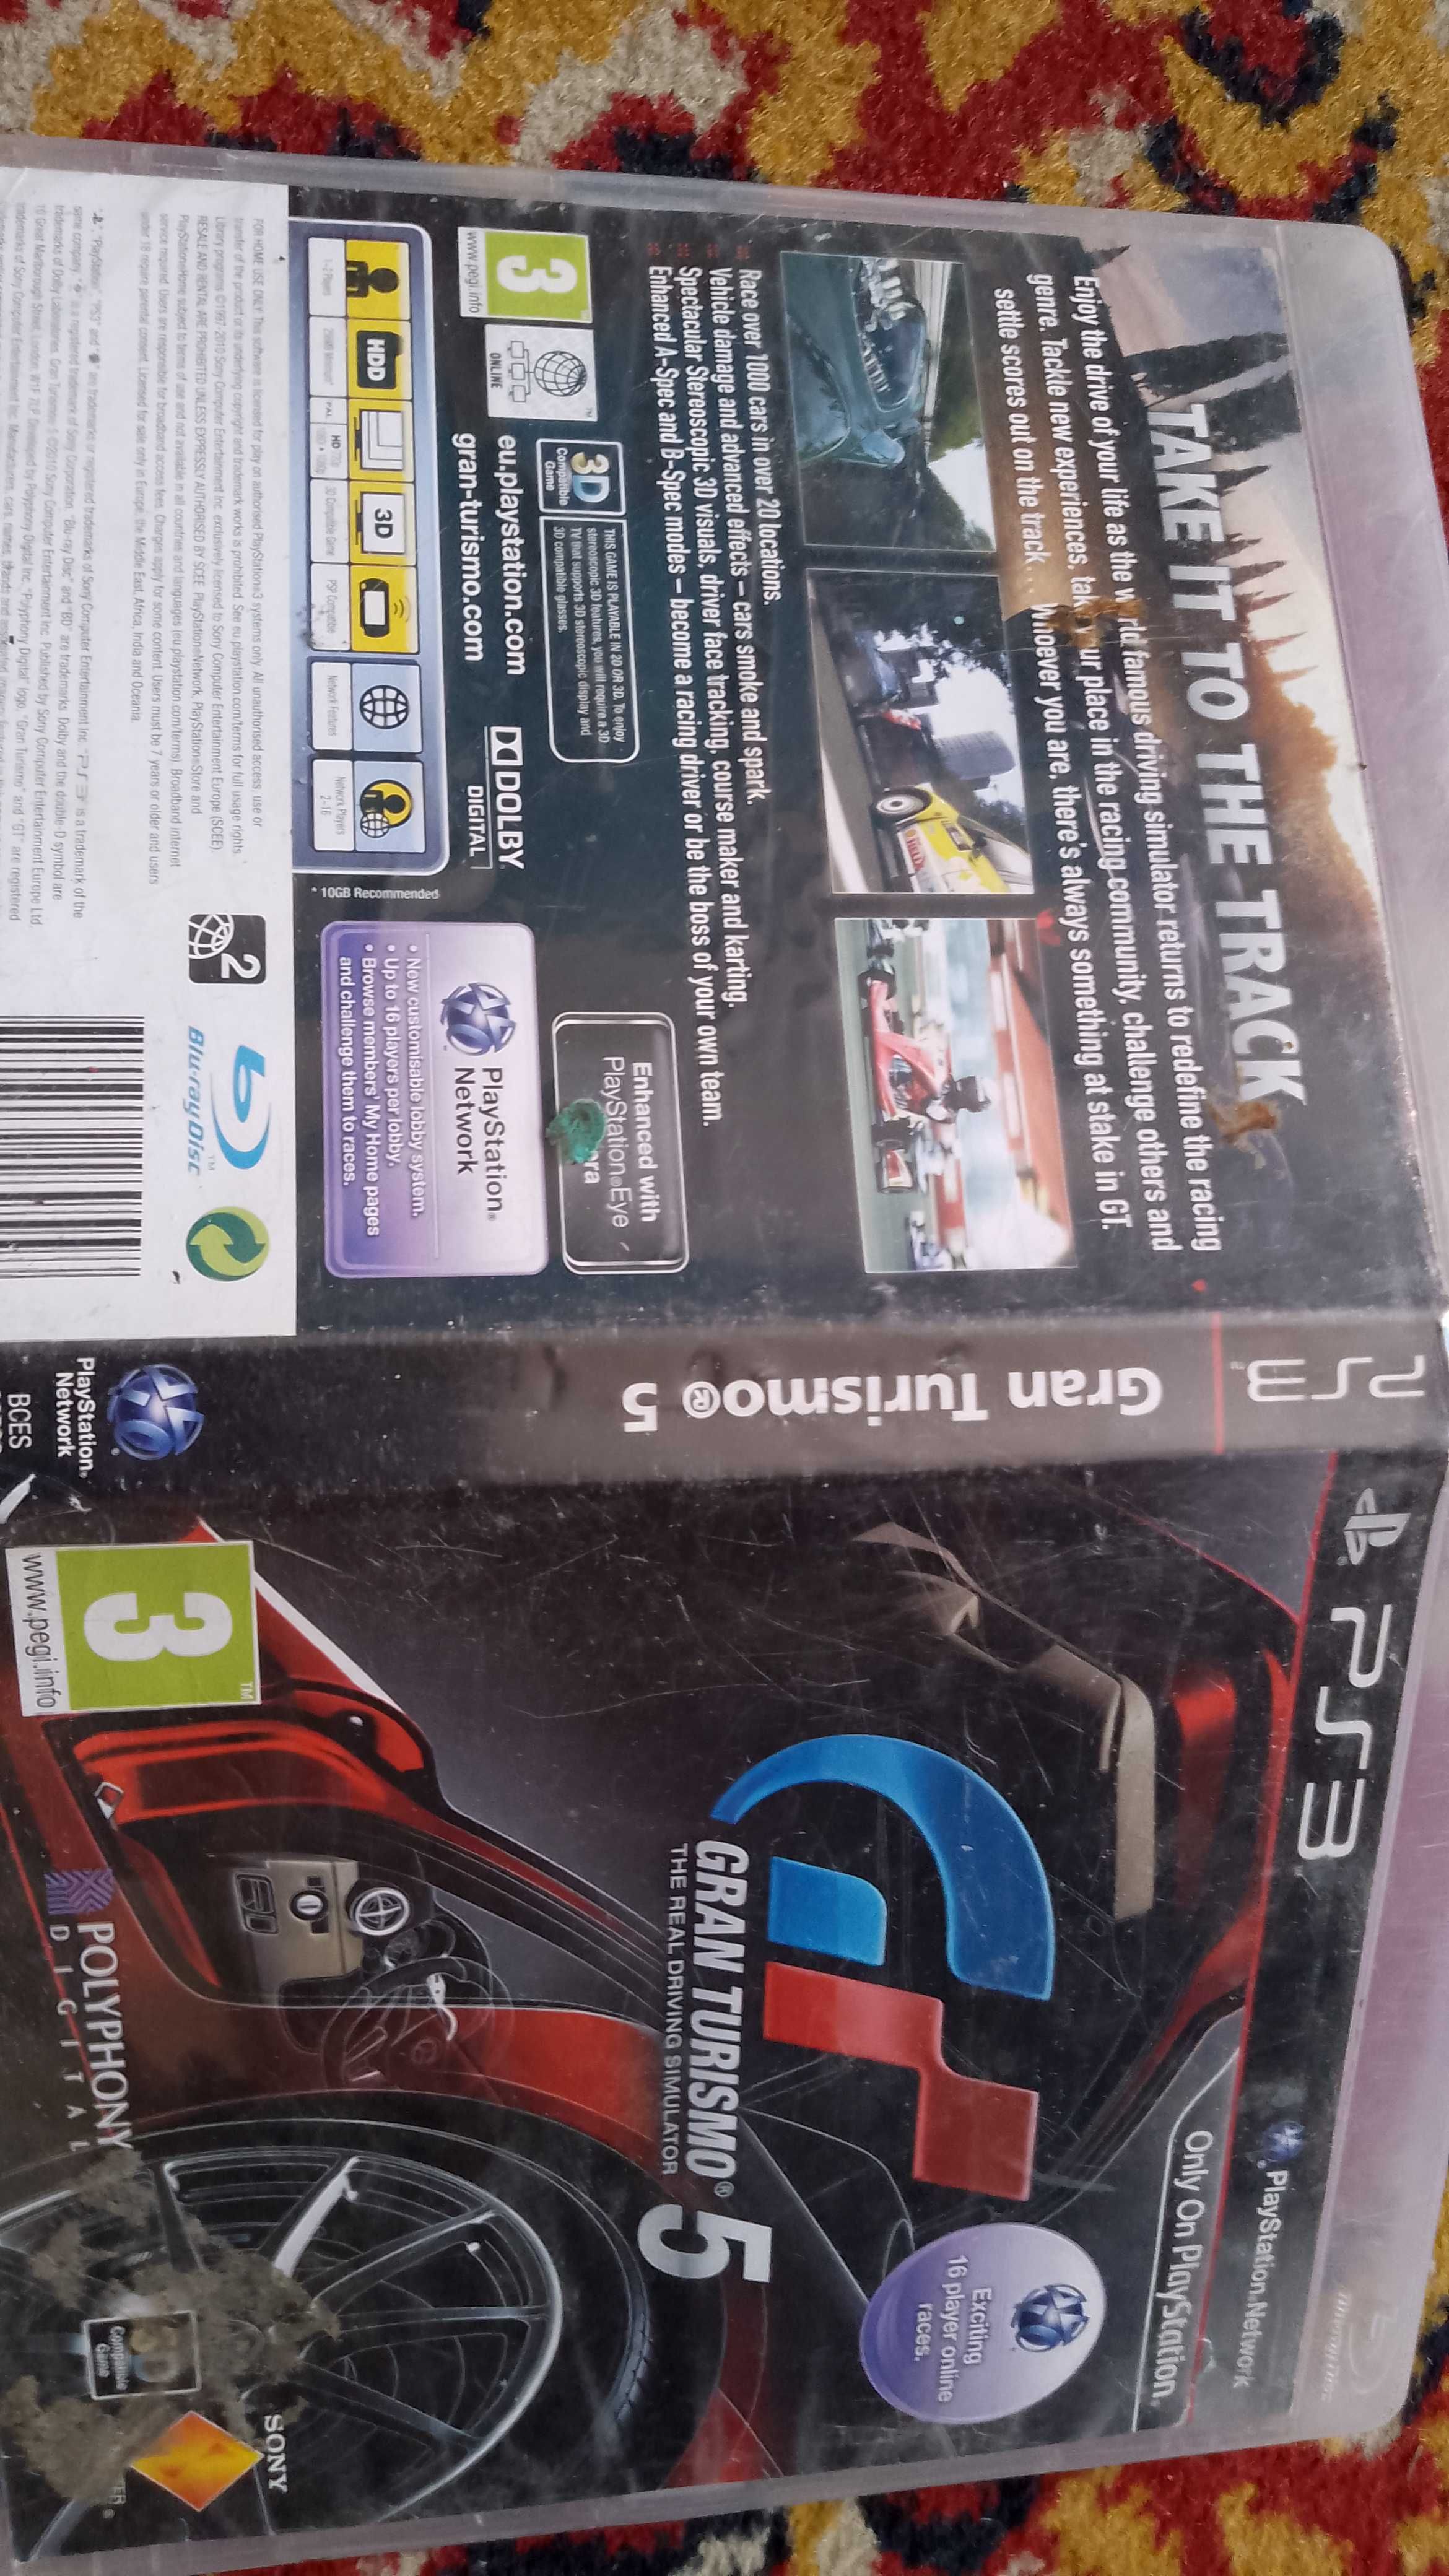 + Gran Turismo 5 + polska wersja językowa, bezbłędna gra na PS3